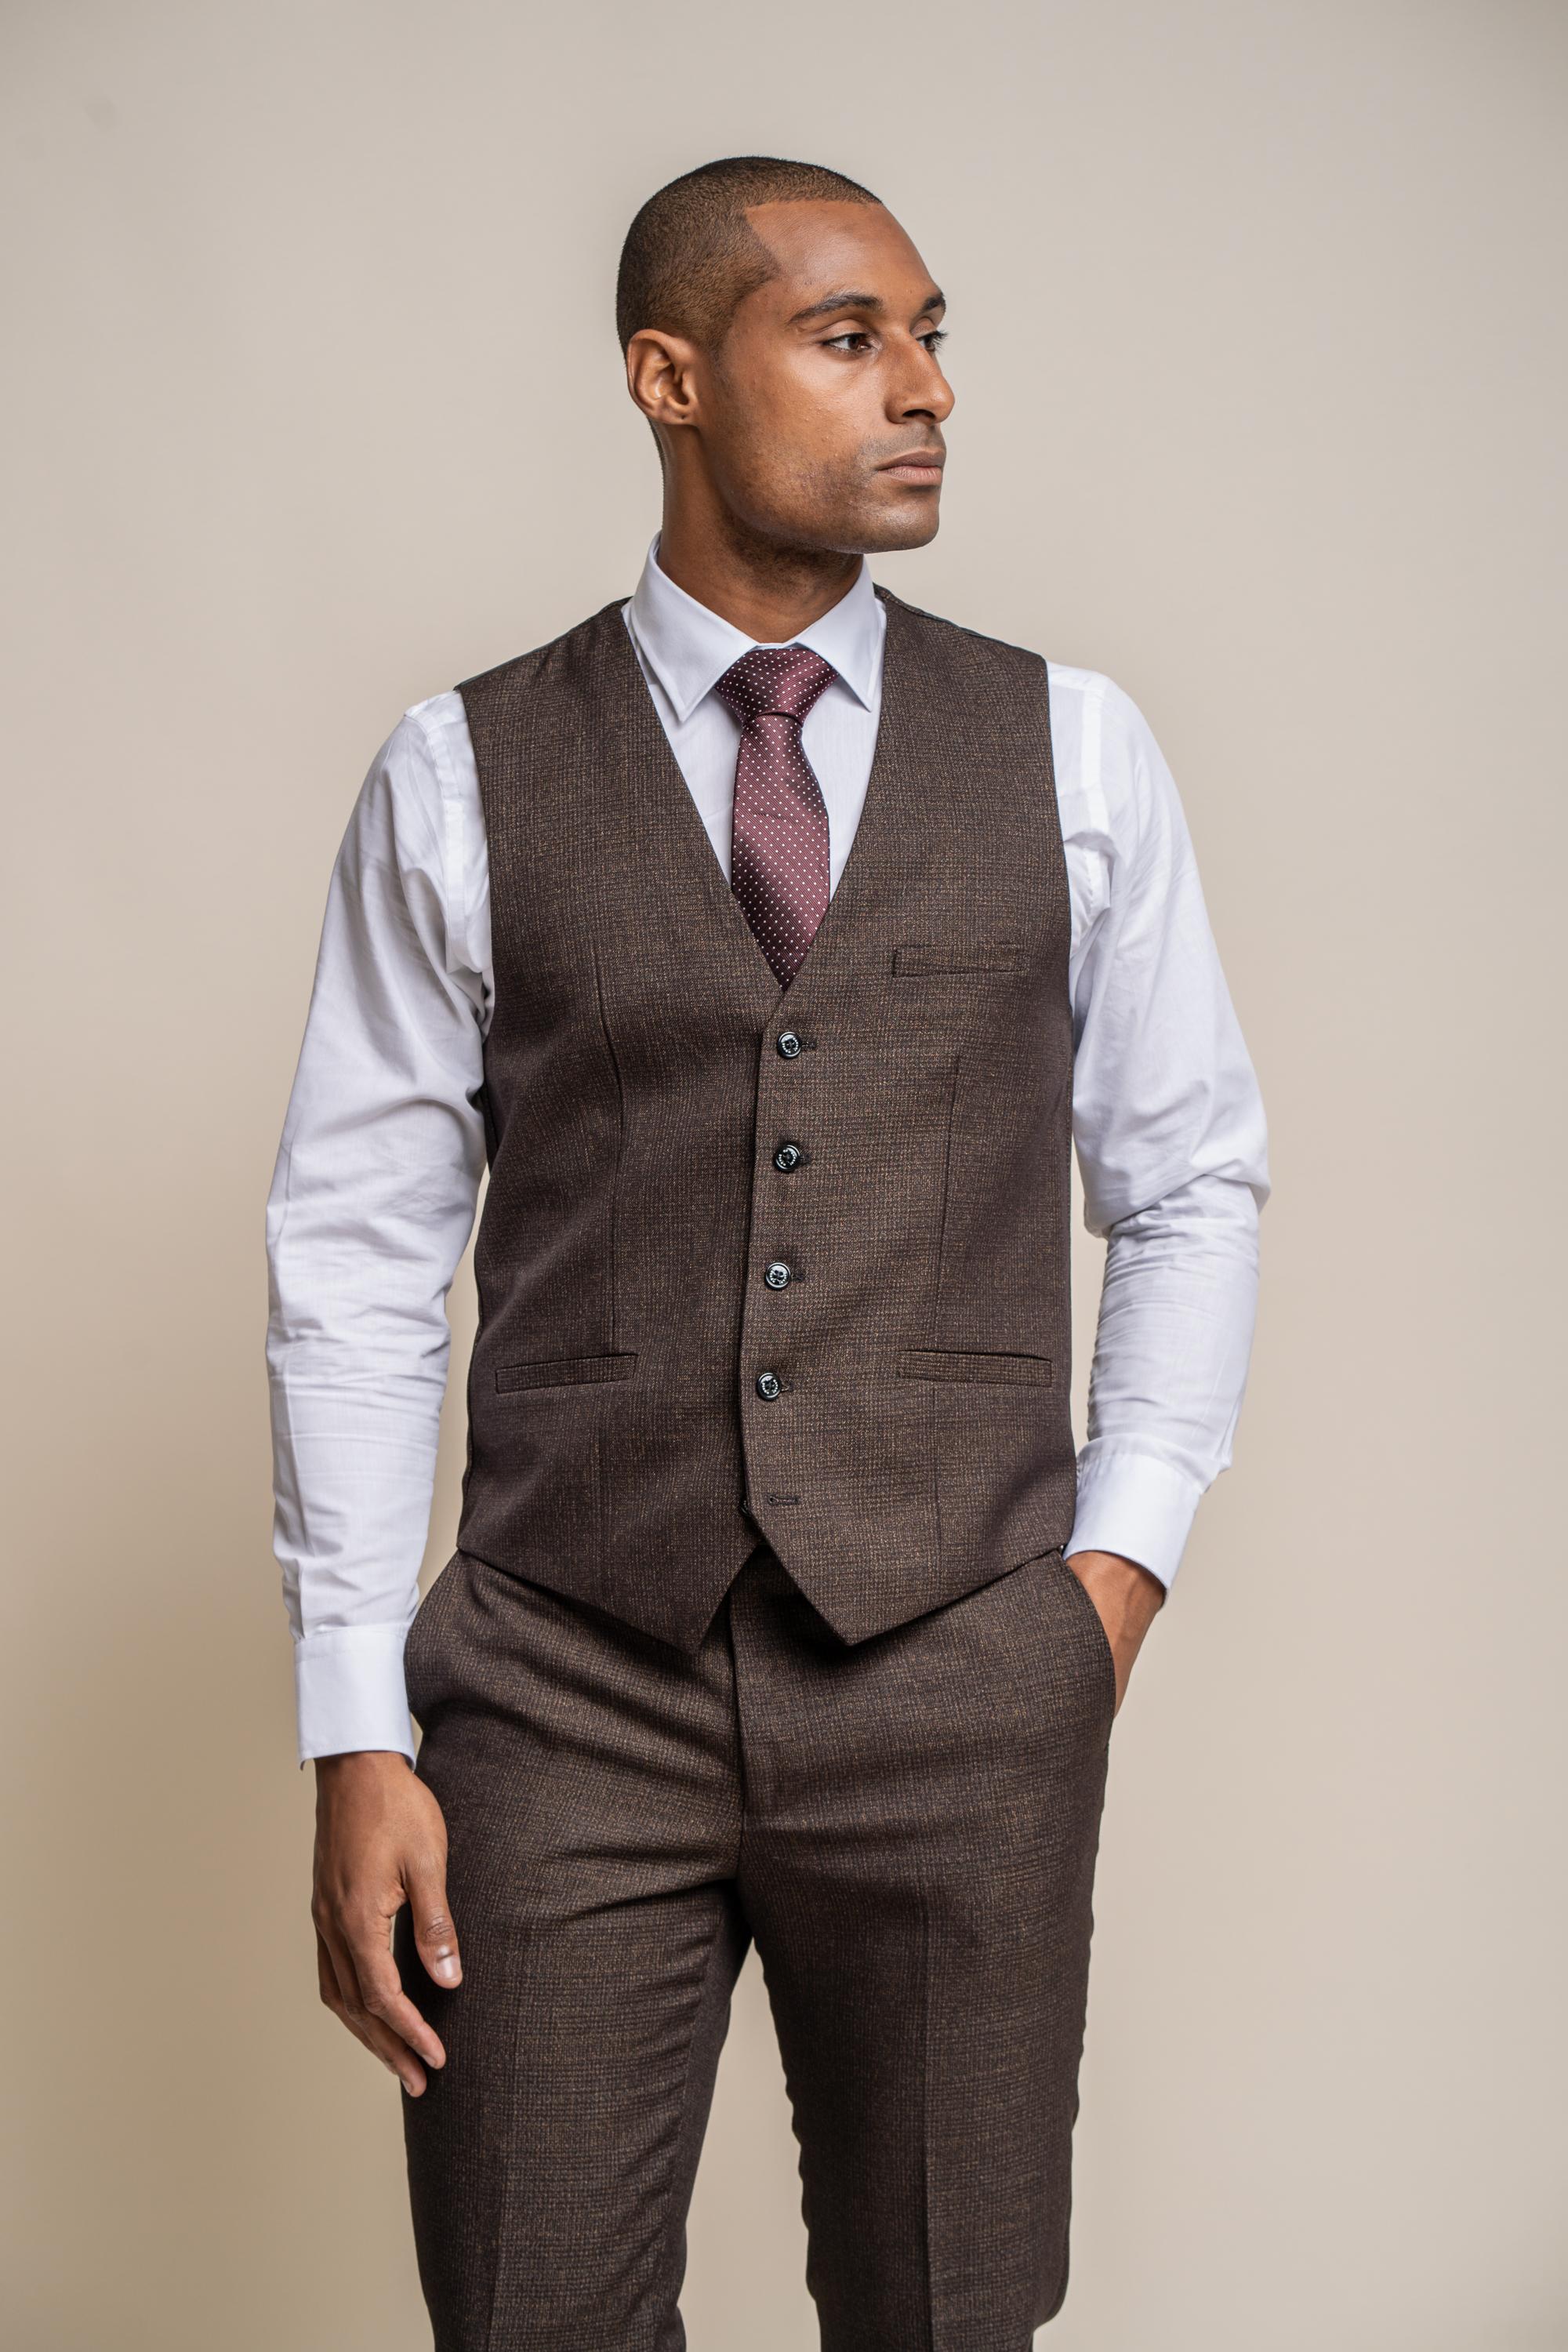 Men's Waistcoats | Black & Tweed Waistcoats | Burton UK